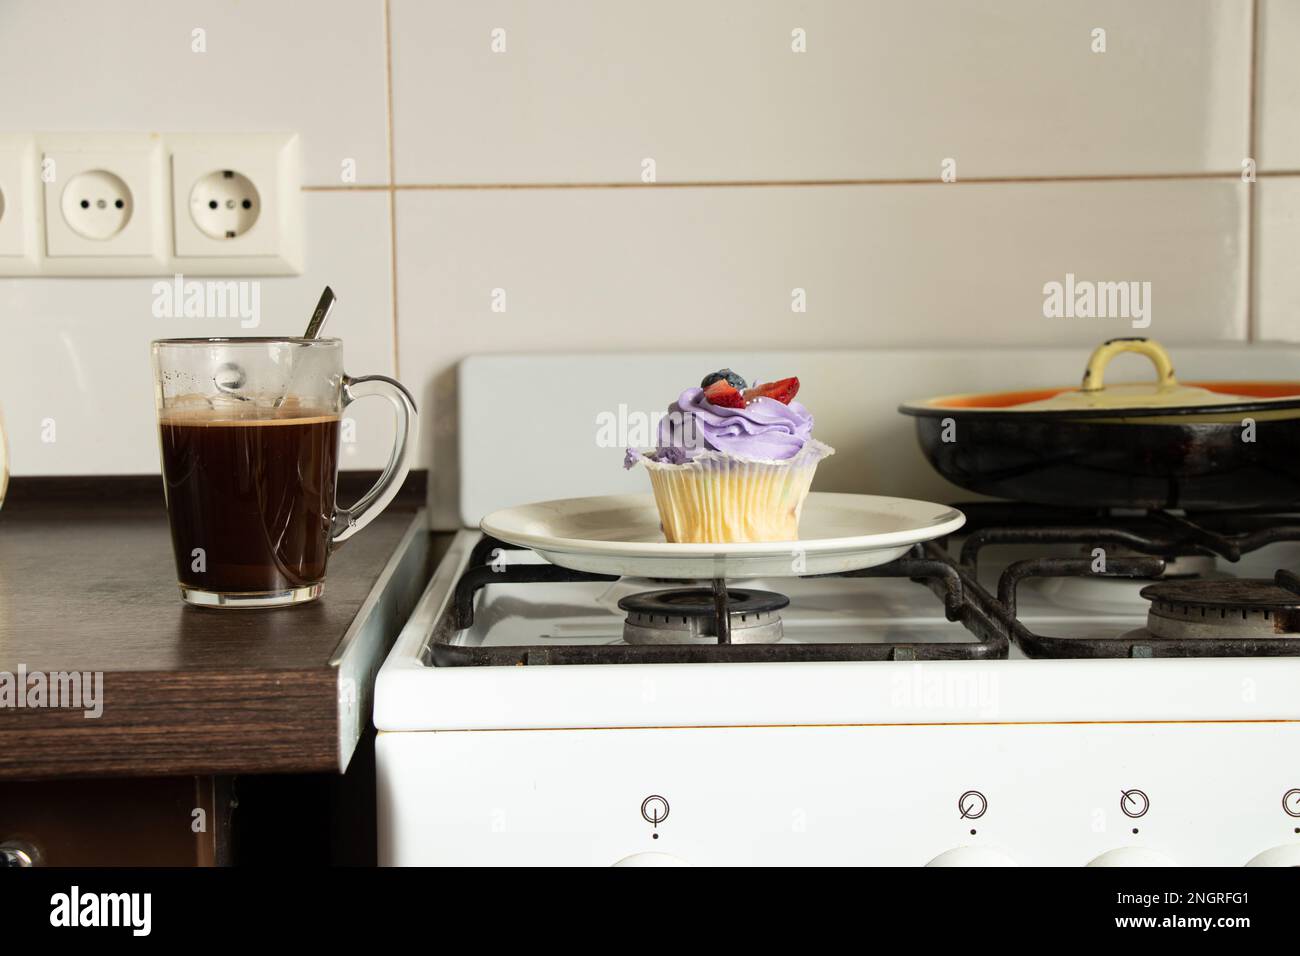 Una magdalena se coloca en una estufa de gas y al lado hay una taza de café en la cocina para el desayuno en casa, postre y café Foto de stock